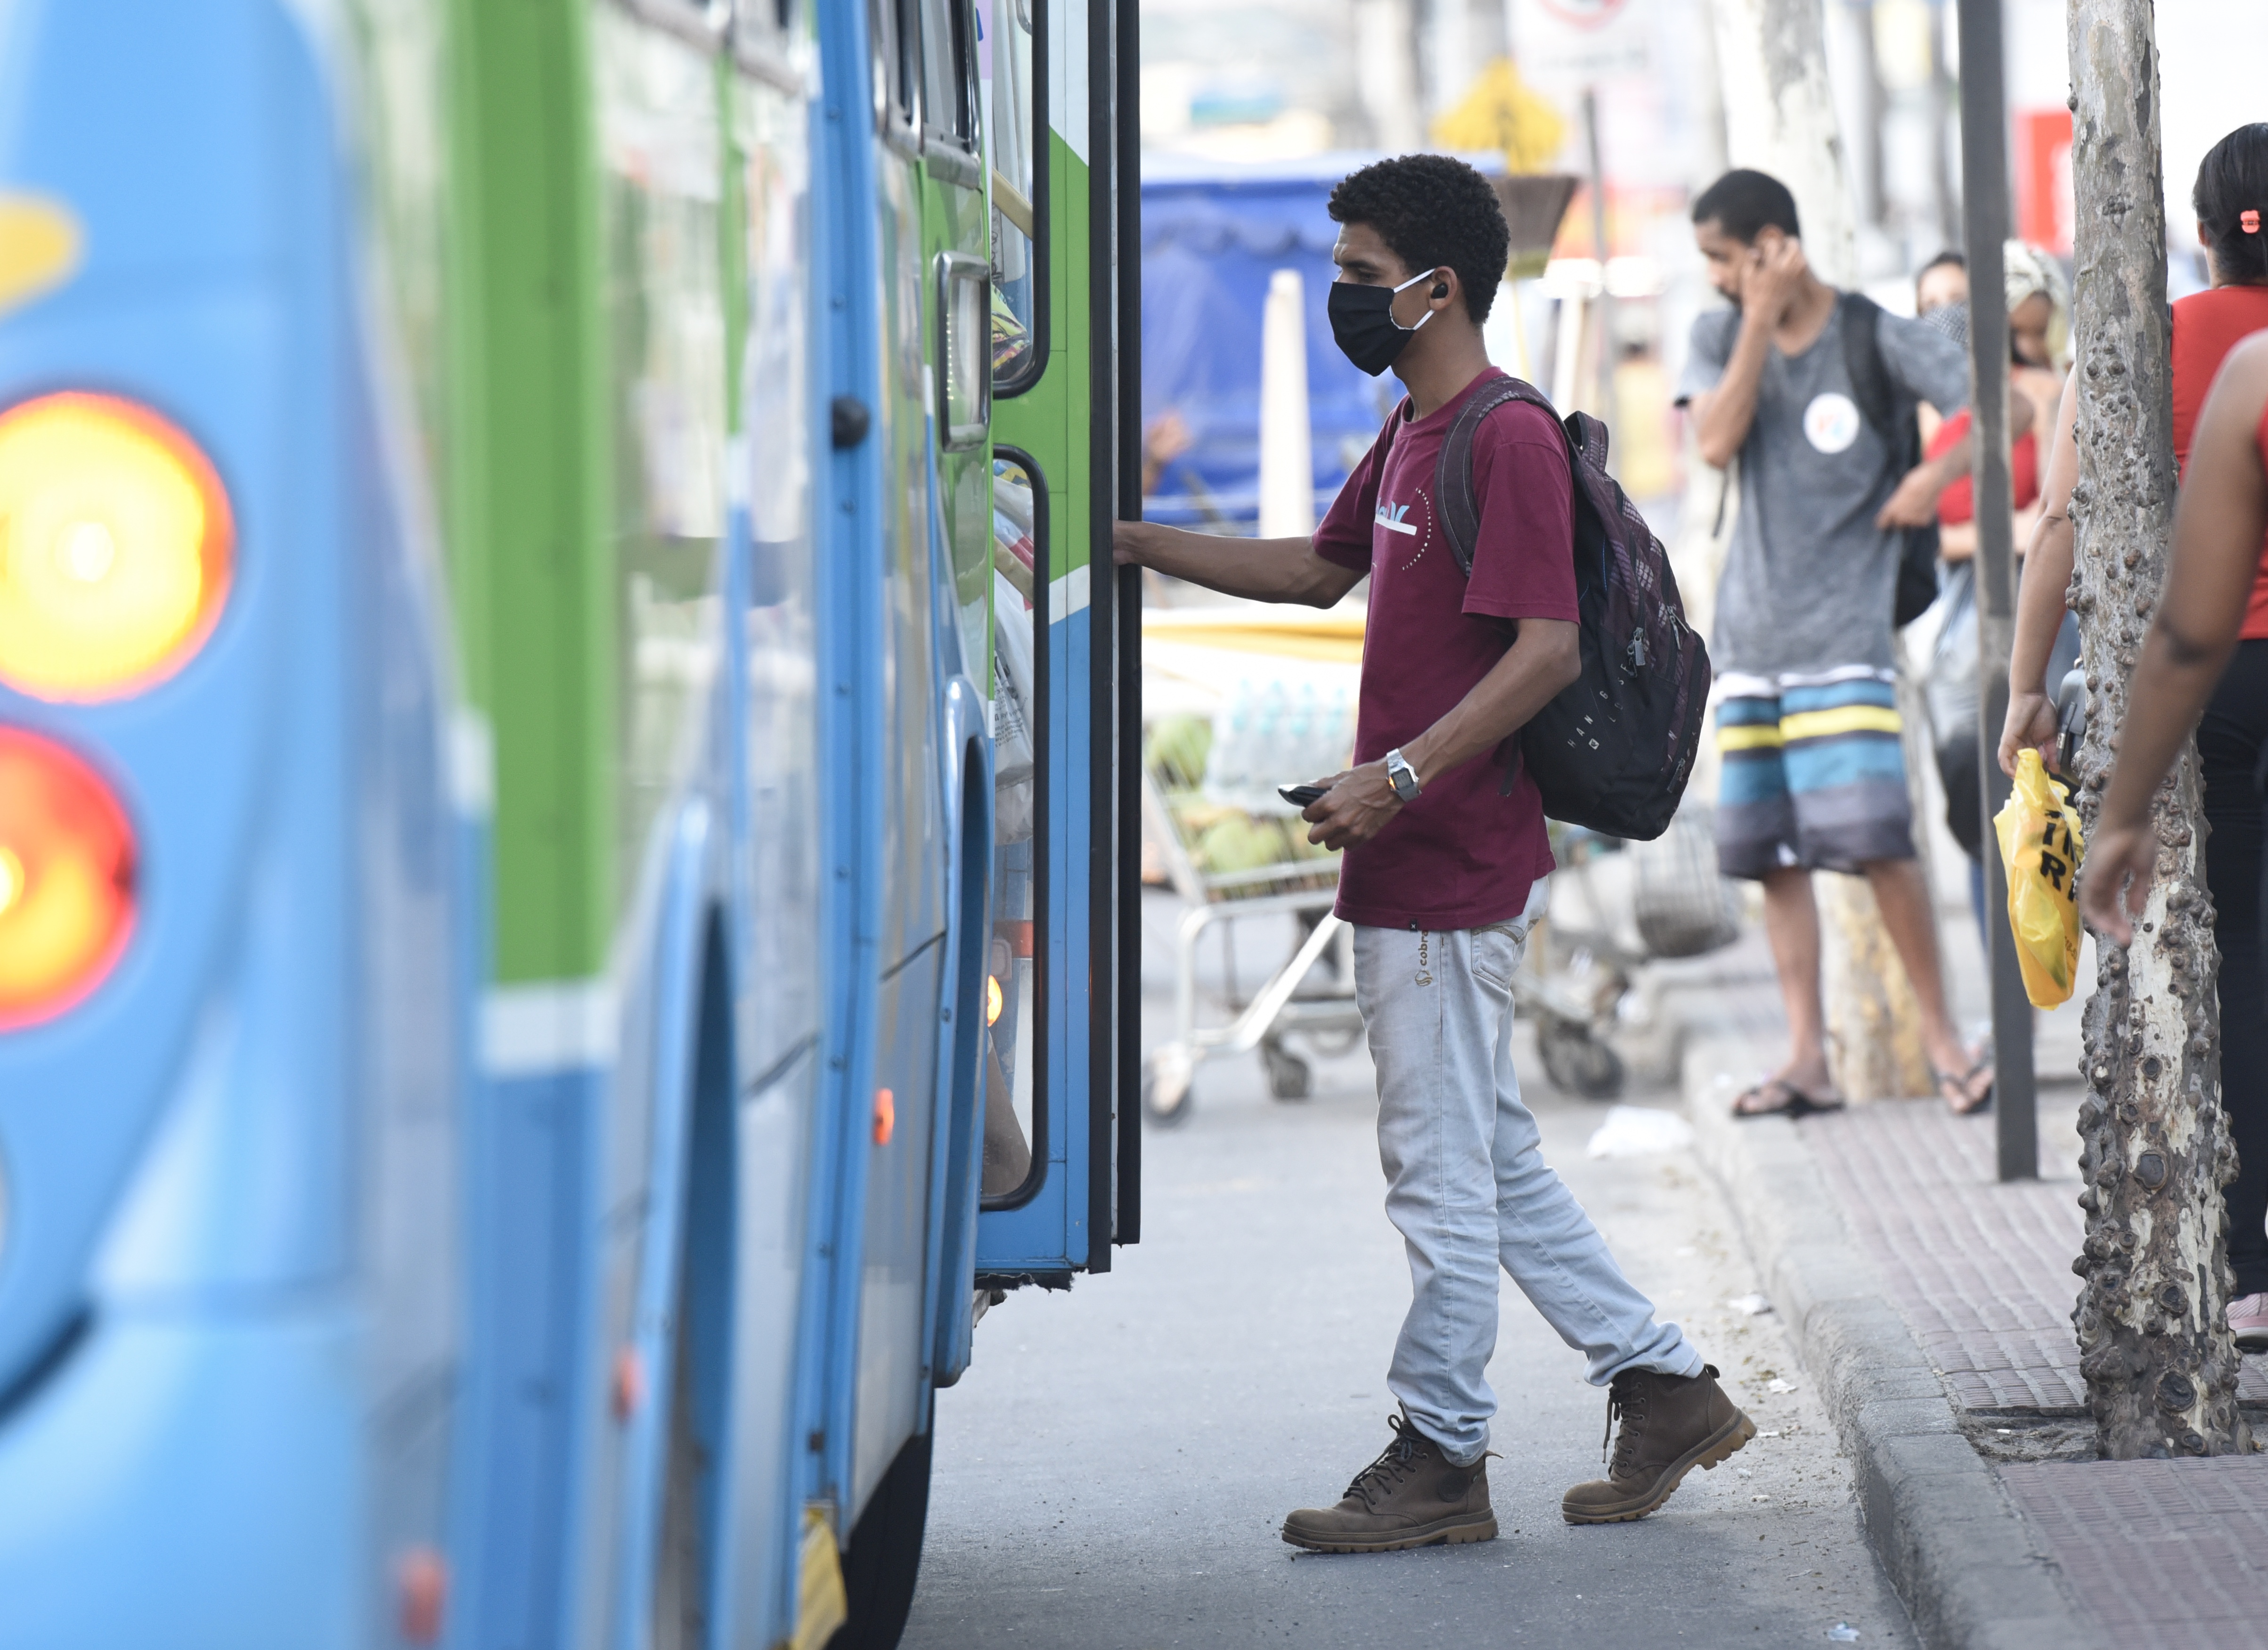 Usuários de transporte coletivo em um ponto de ônibus de Vila Velha